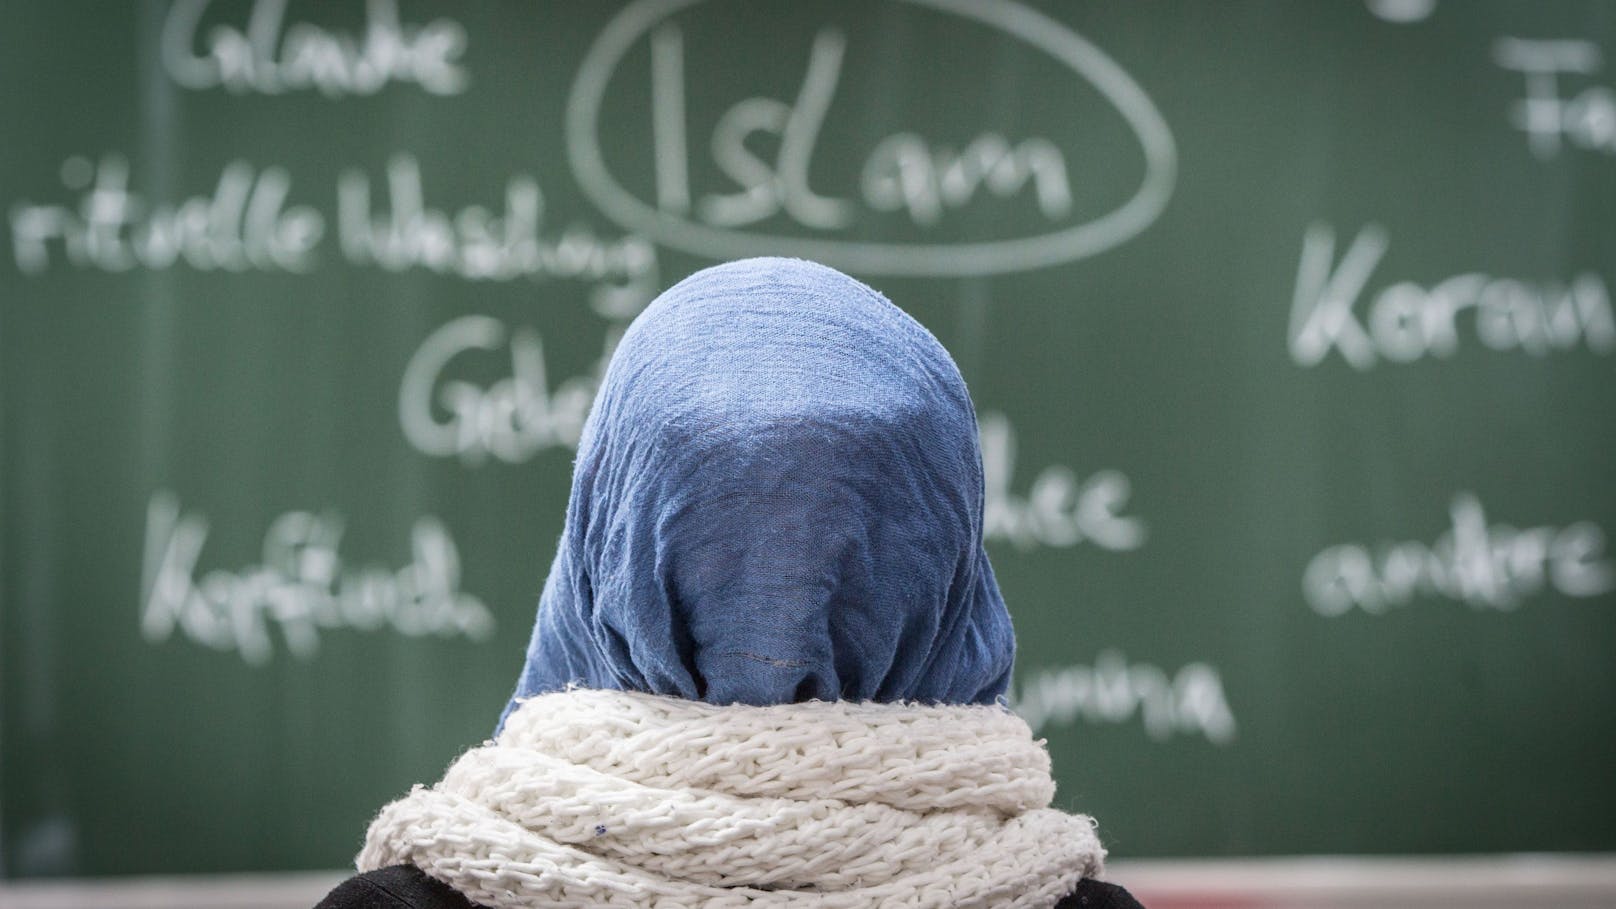 "Muslimische Mädchen weigern sich, mitzumachen"